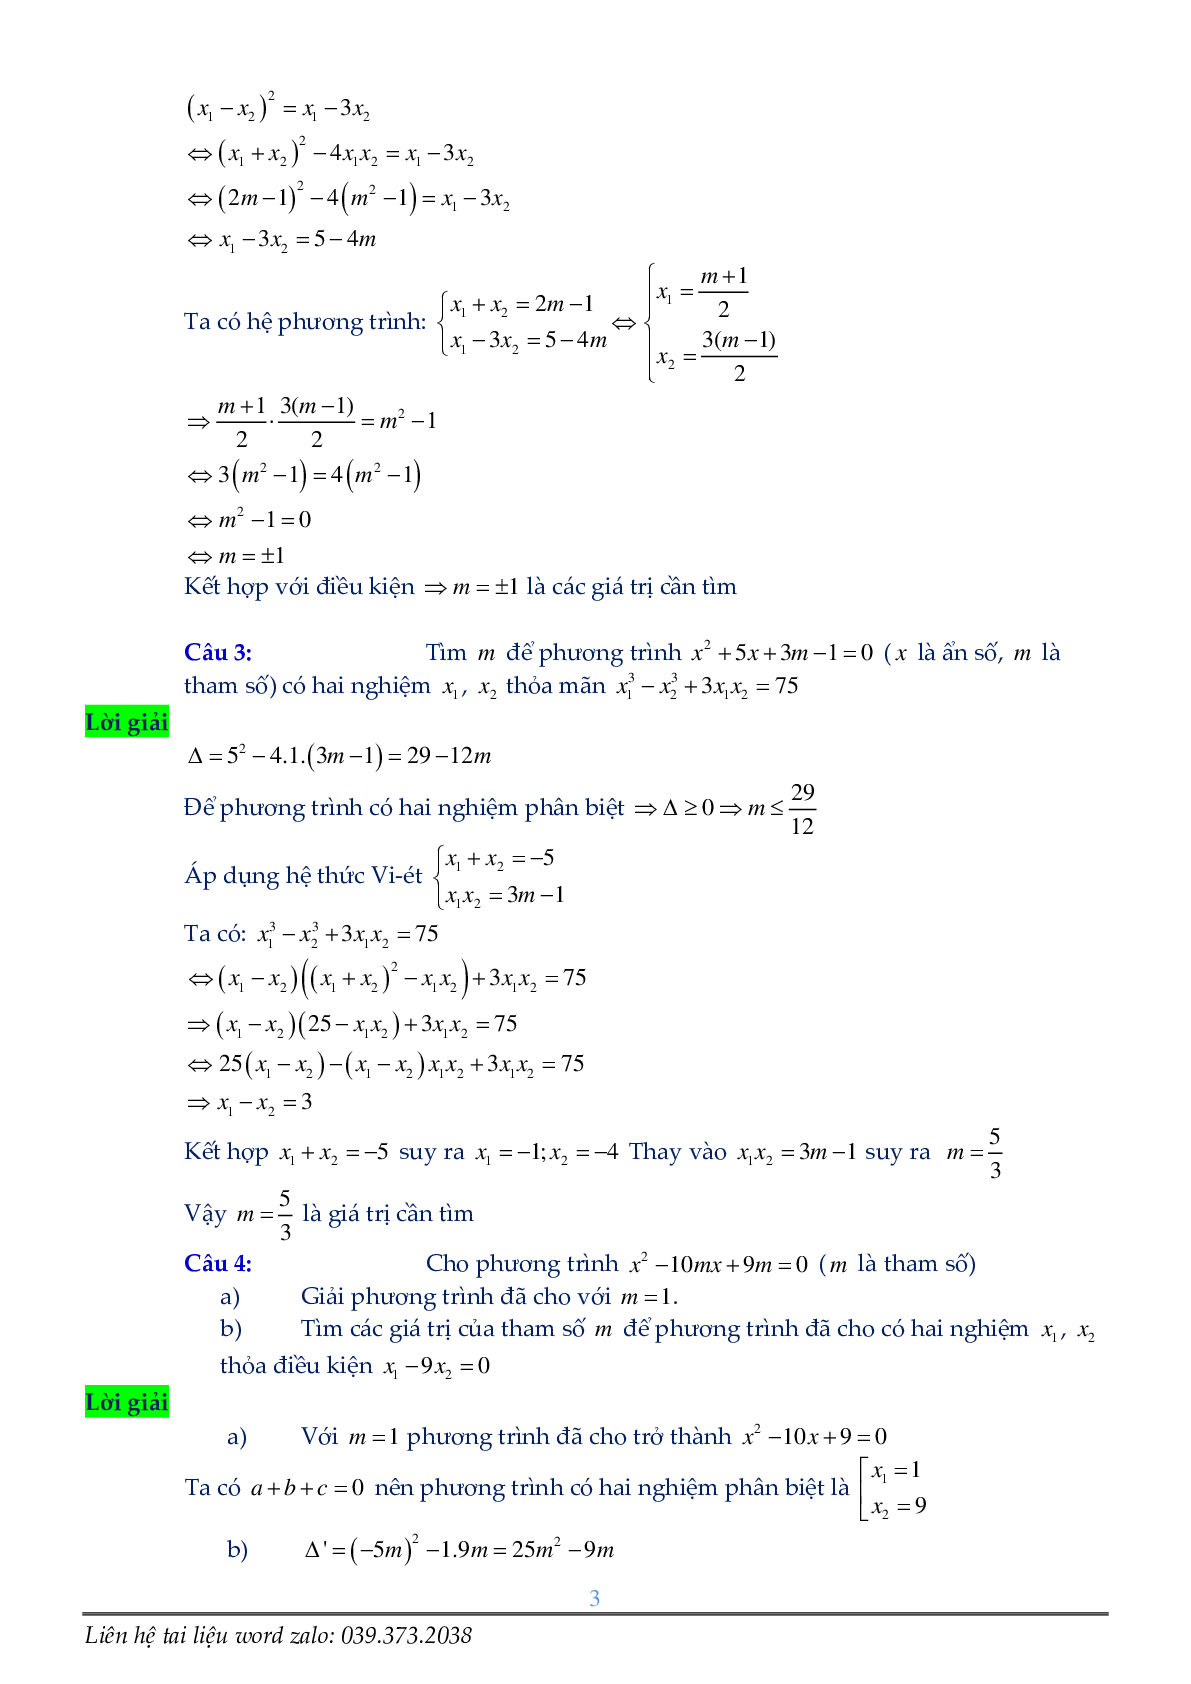 Phương trình chứa tham số (trang 3)